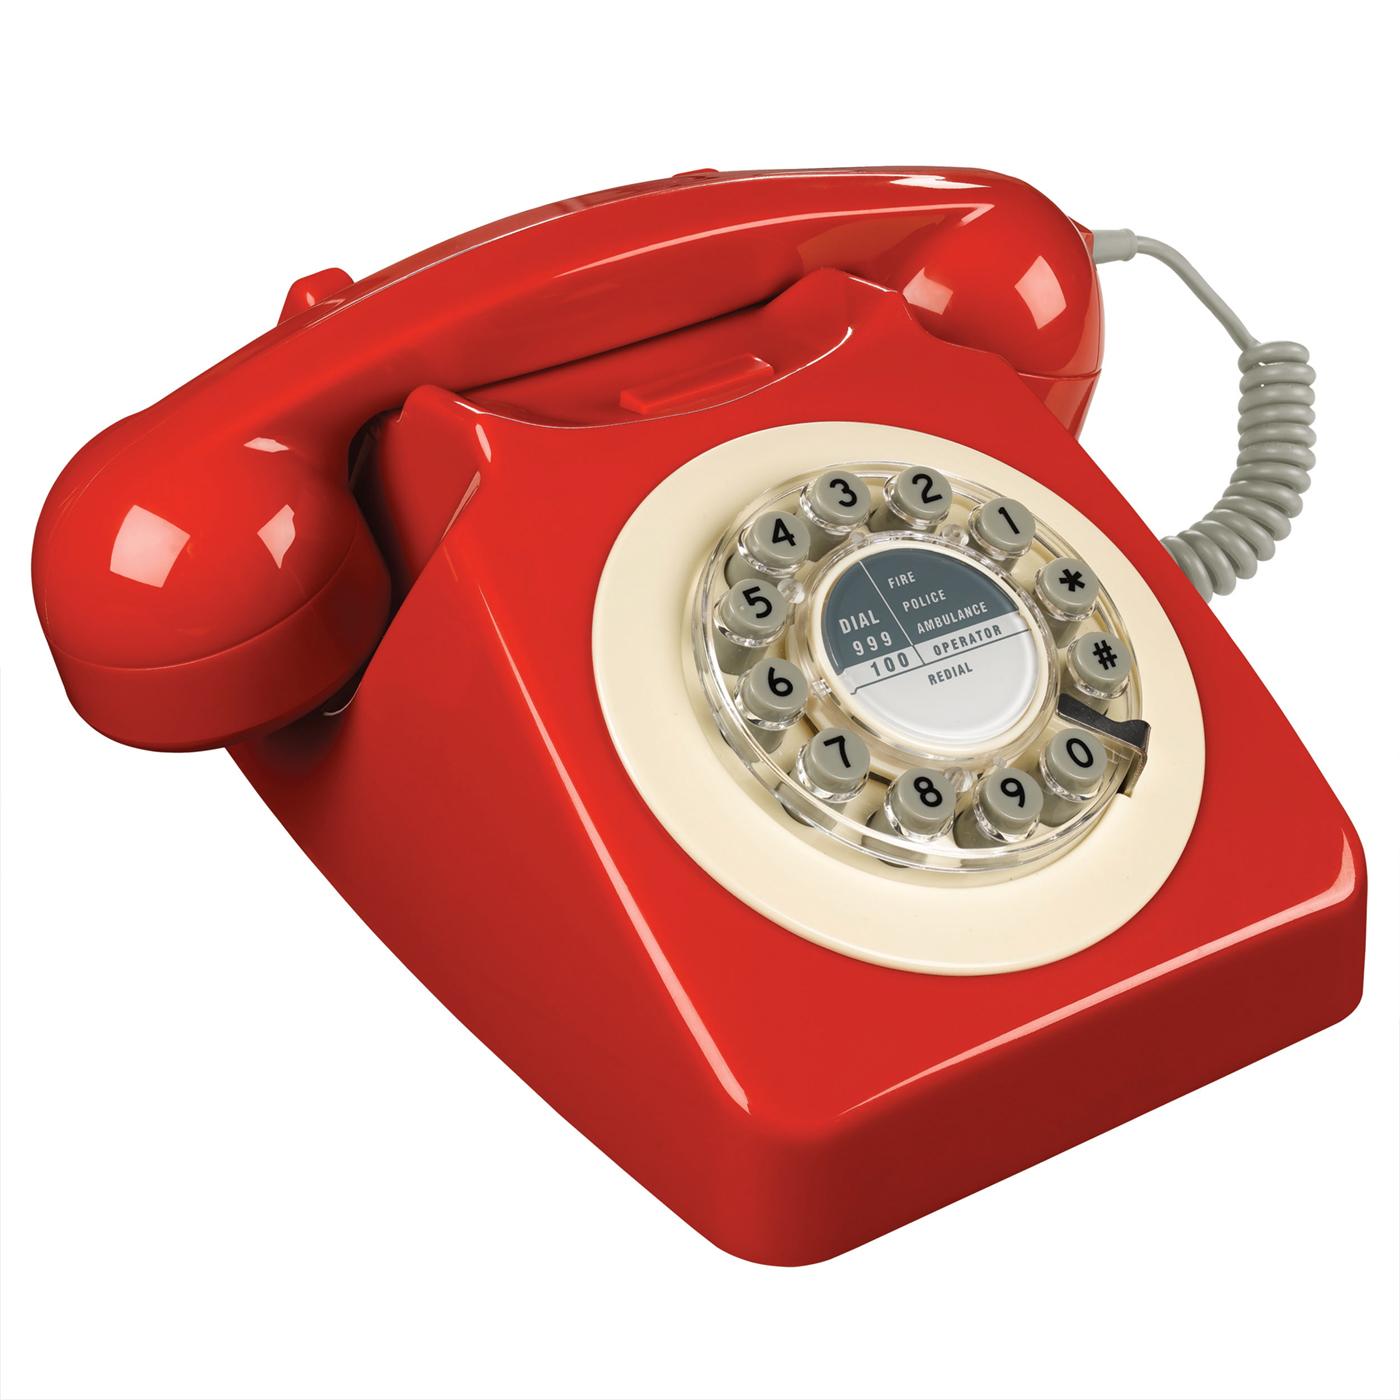 retro-746-phone-red1.jpg